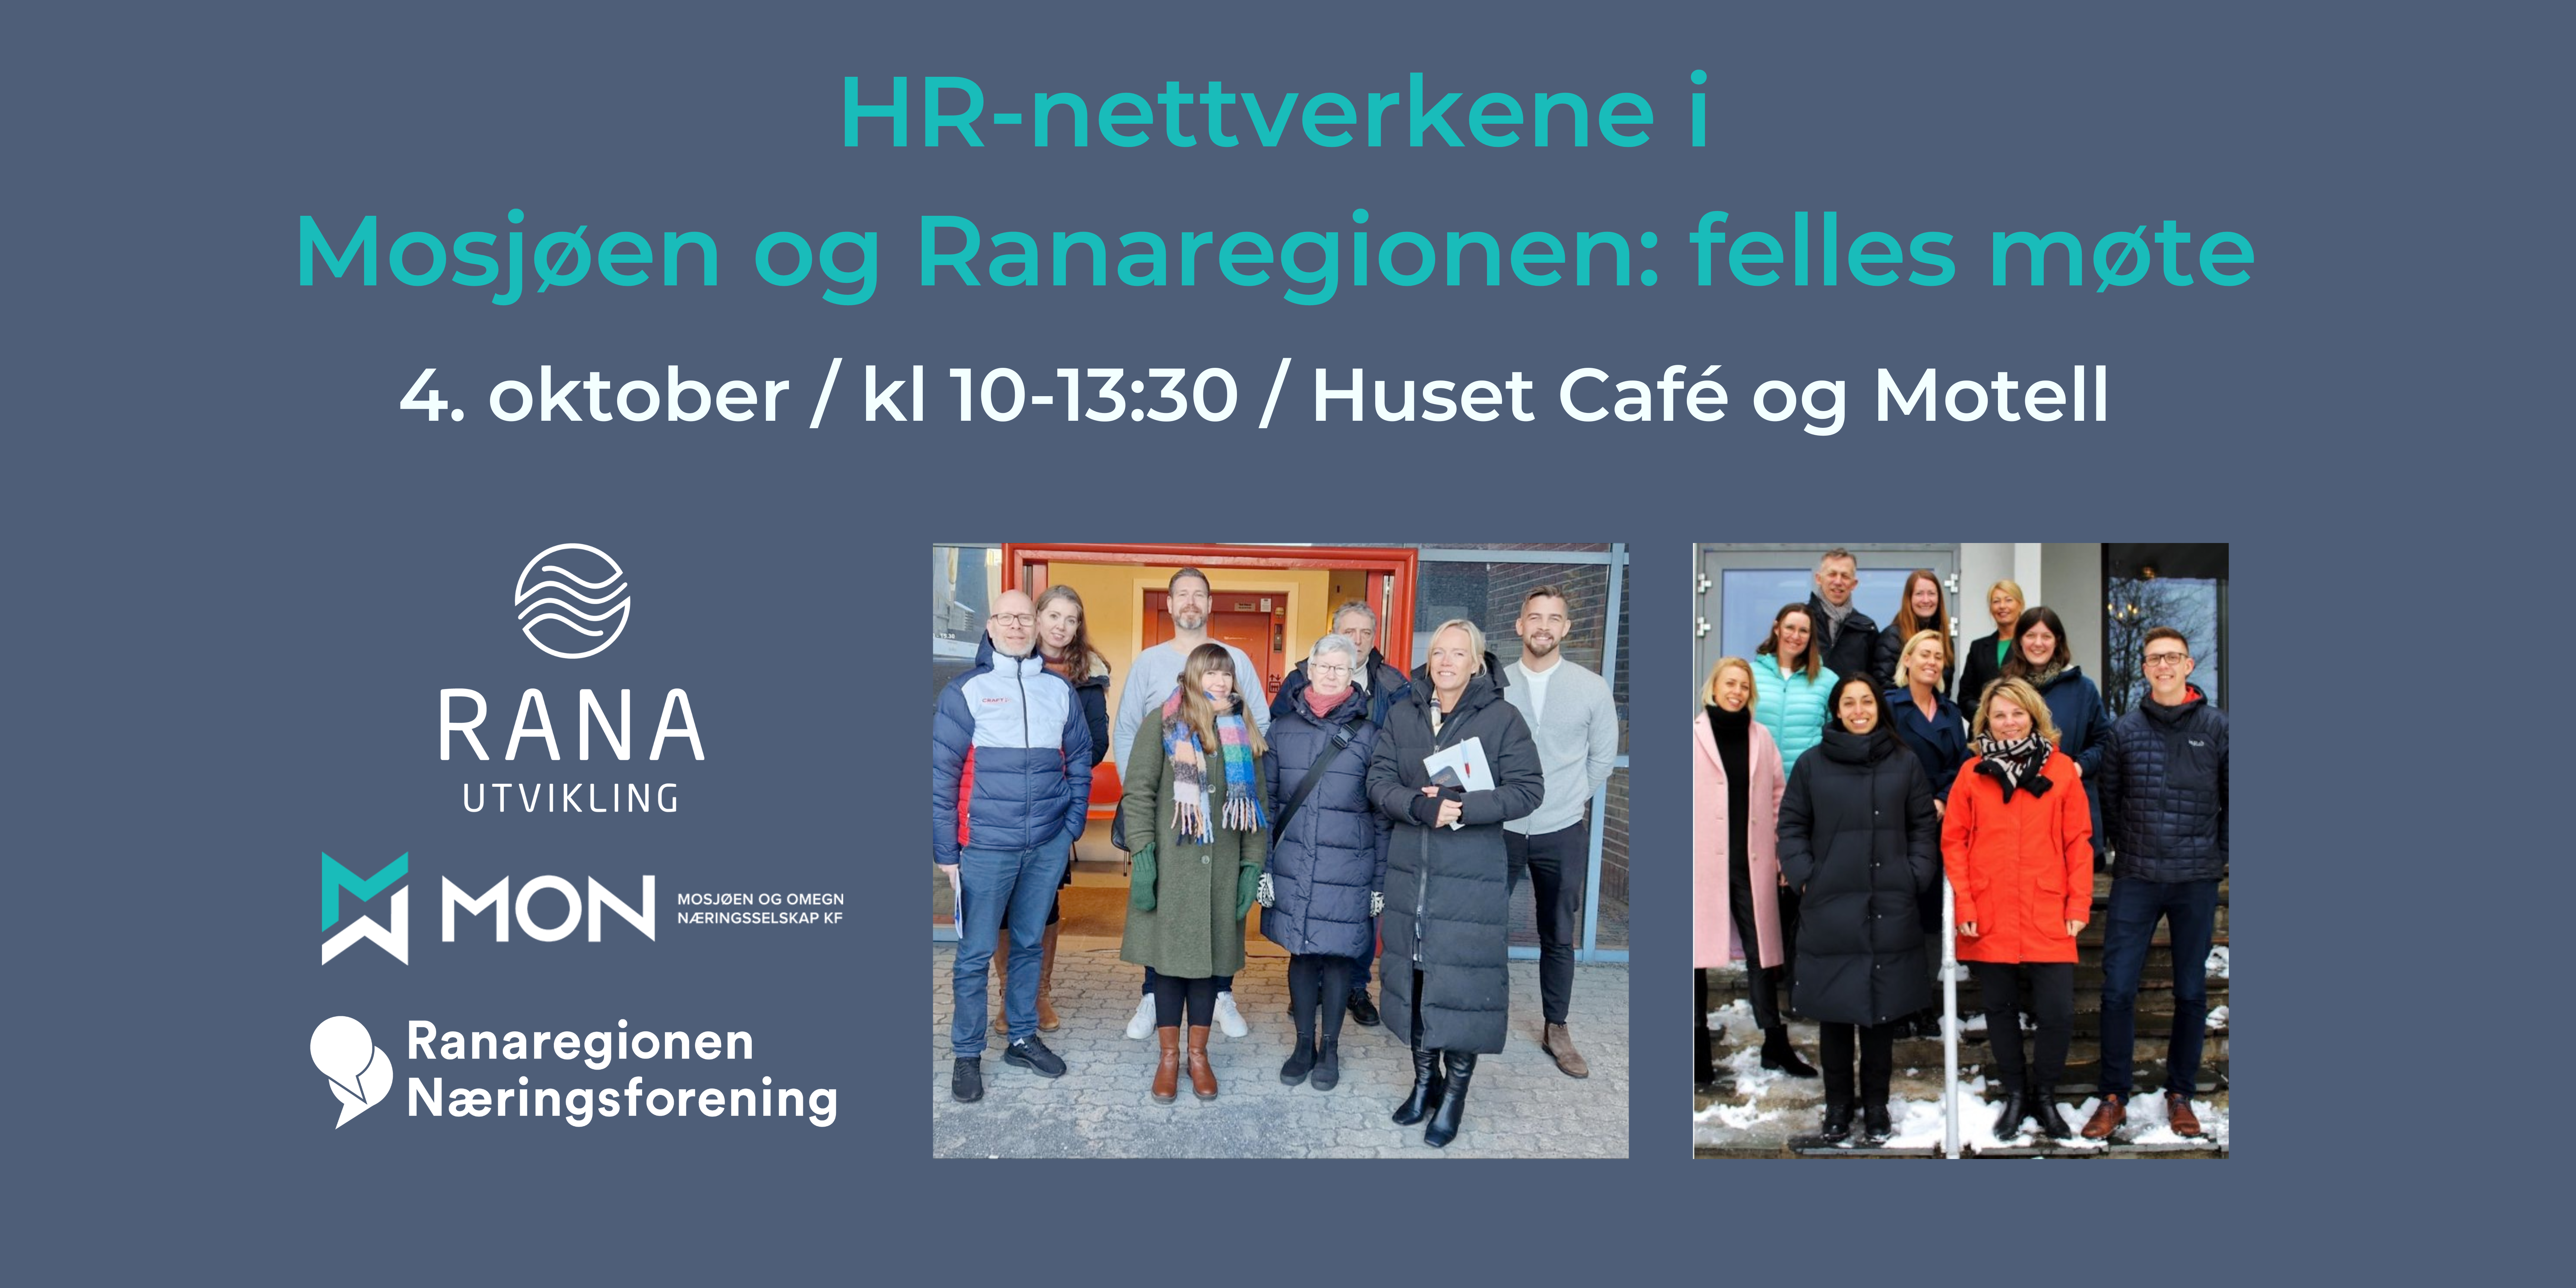 HR-nettverkene i Mosjøen og i Ranaregionen: Felles møte 